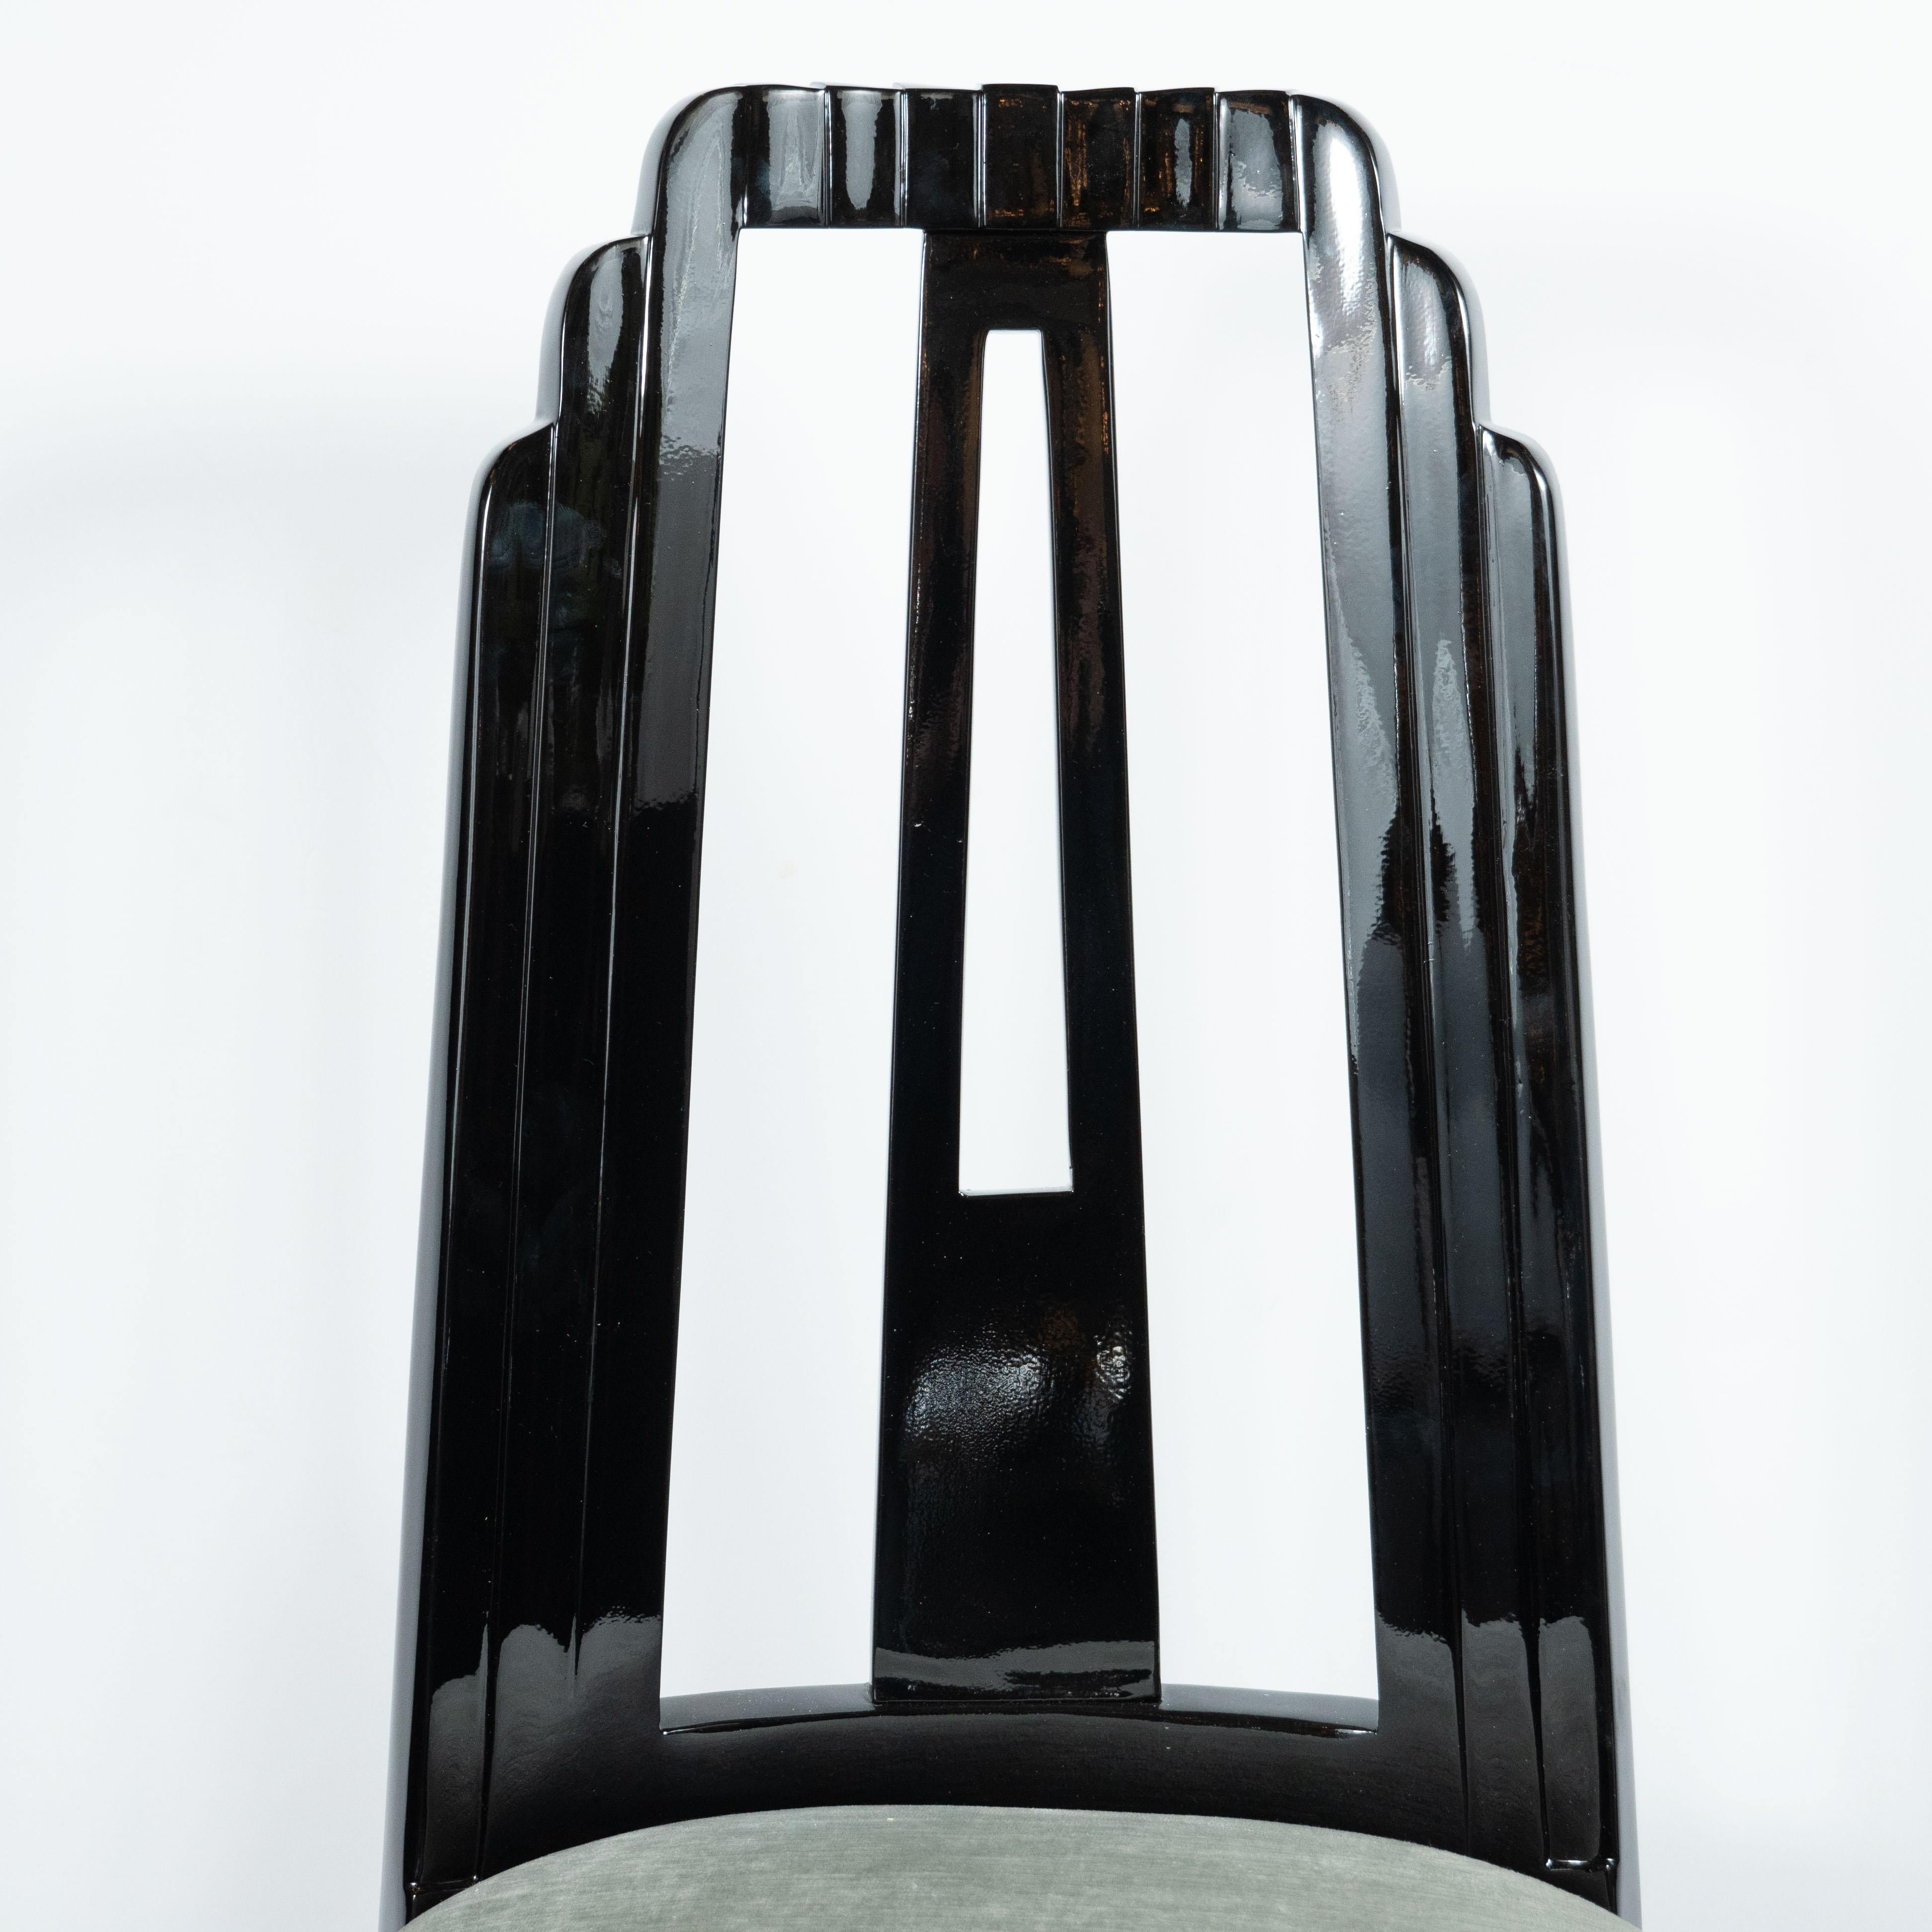 Dieser schöne Art Deco Schreibtisch oder Beistellstuhl aus dem Maschinenzeitalter wurde in den Vereinigten Staaten um 1935 hergestellt. Er hat eine kanalisierte, wolkenkratzerartige Rückseite, gerade Vorderbeine und leicht angewinkelte Hinterbeine